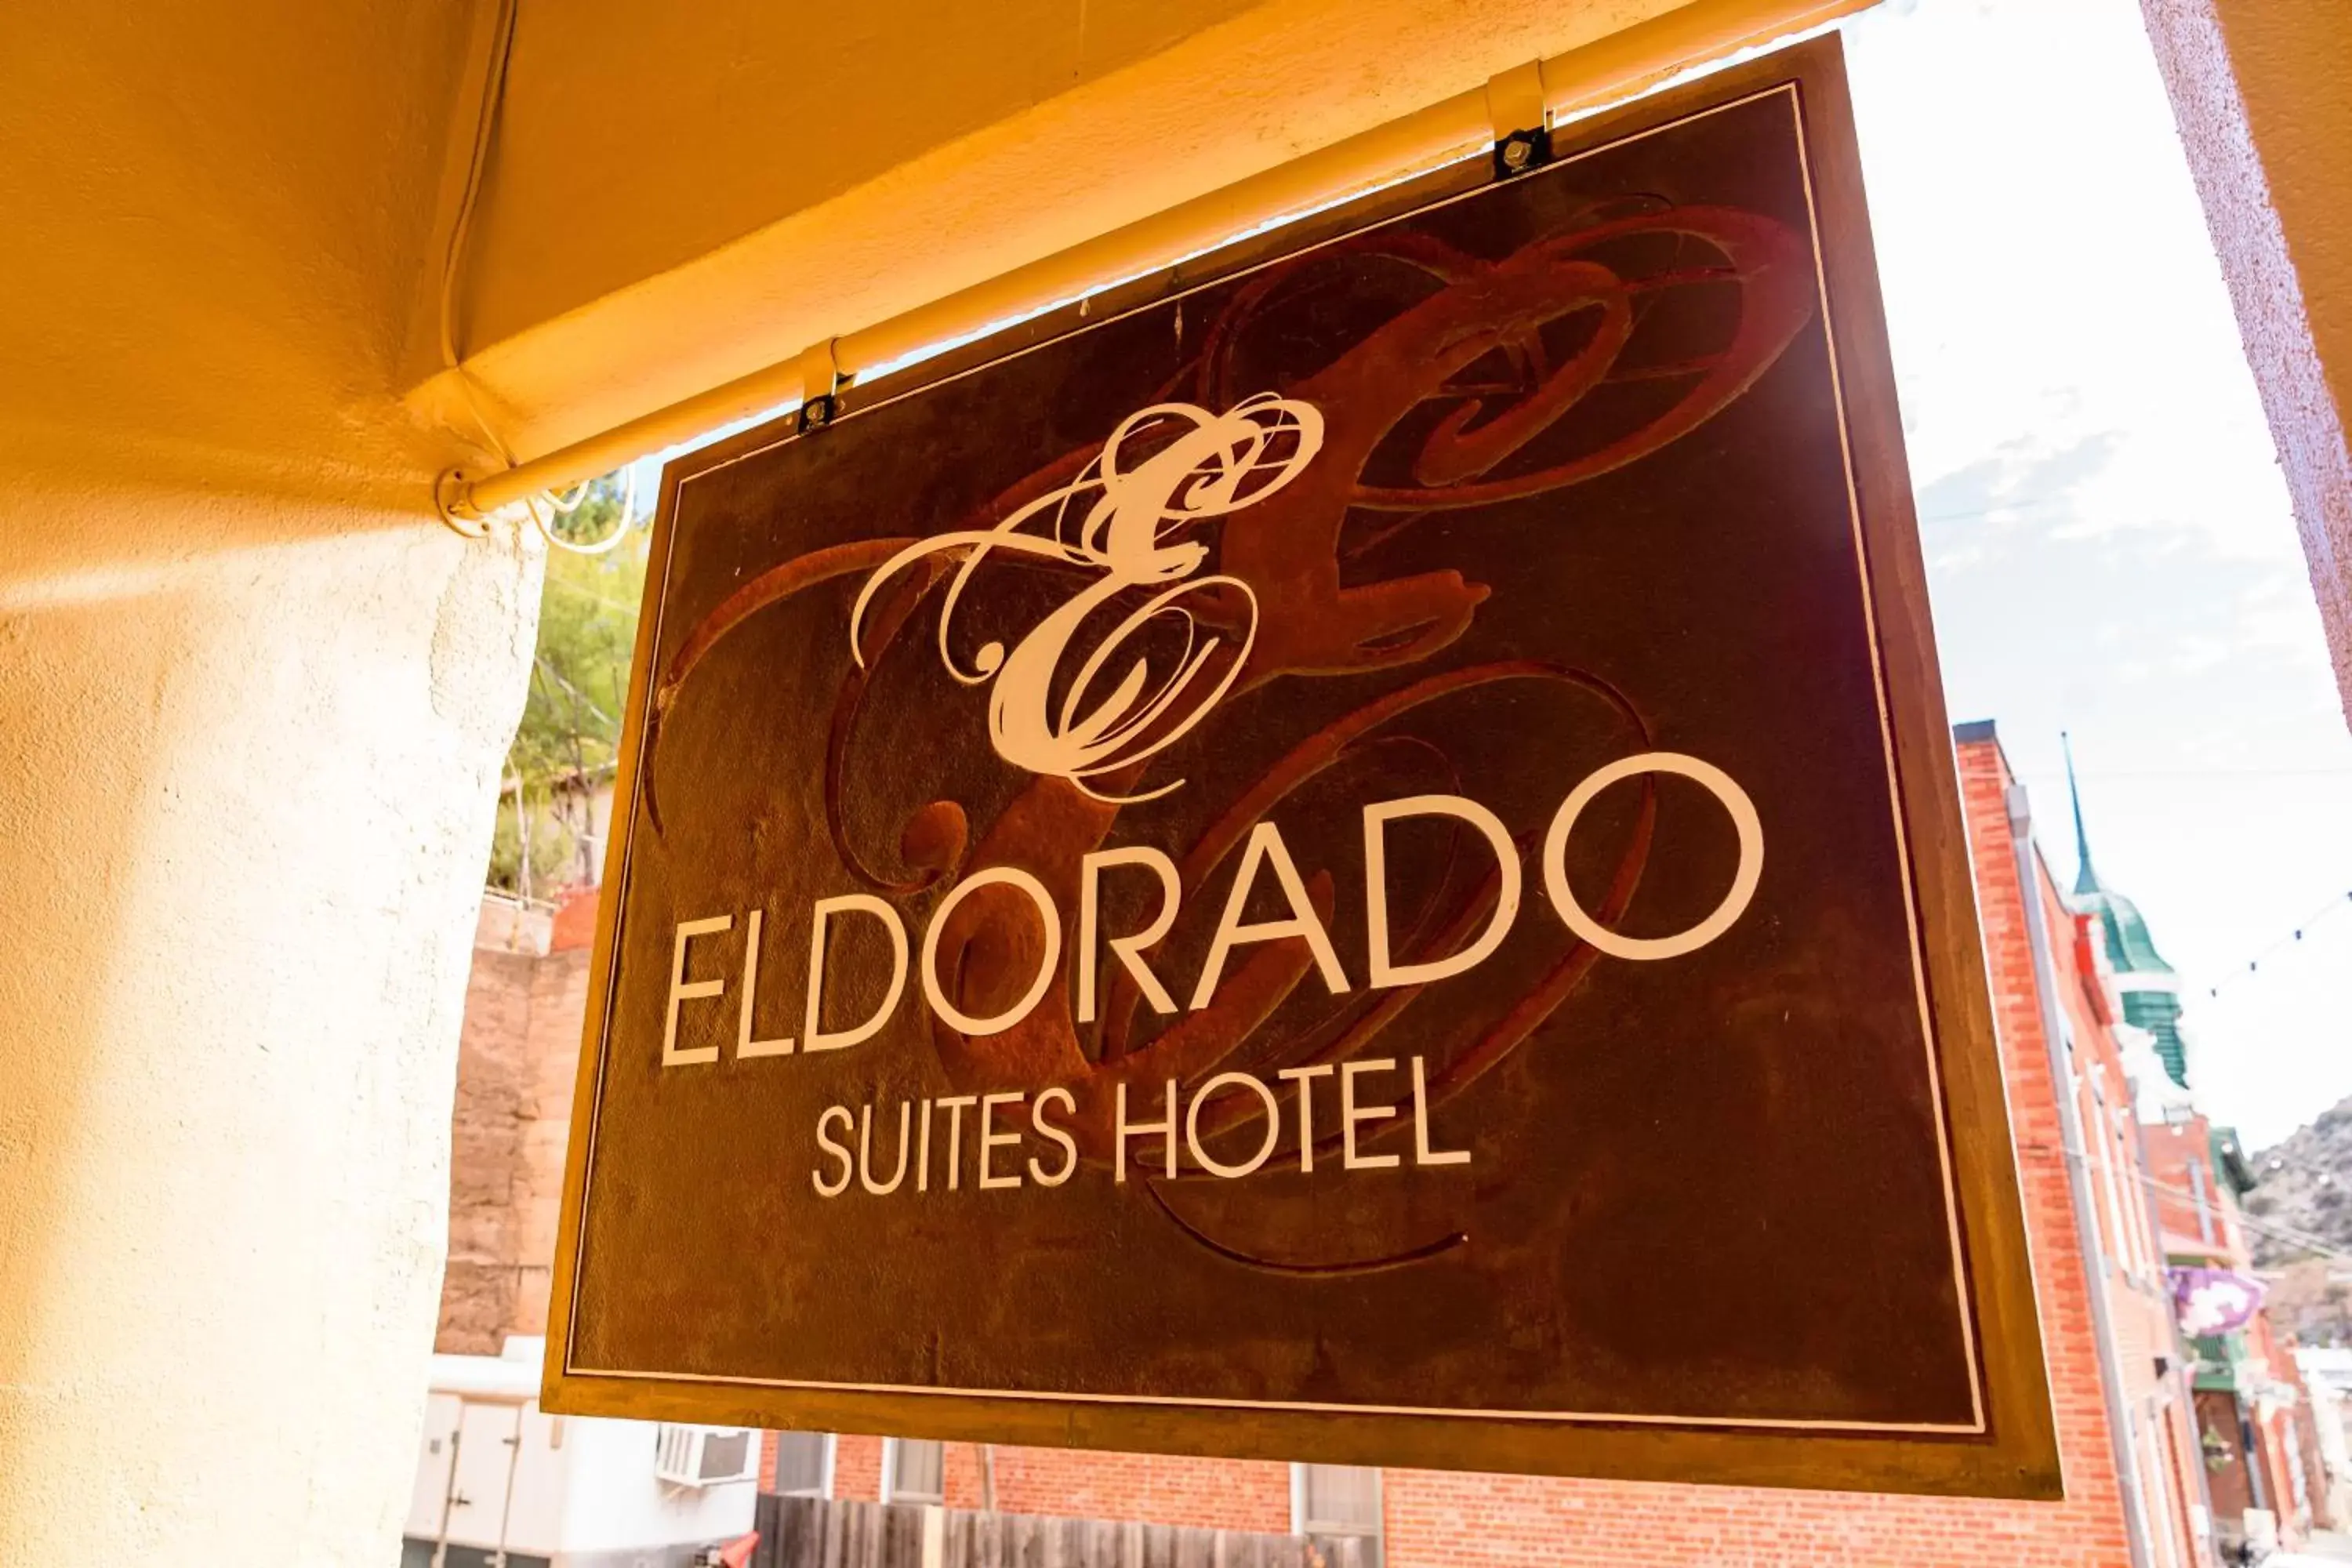 Eldorado Suites Hotel